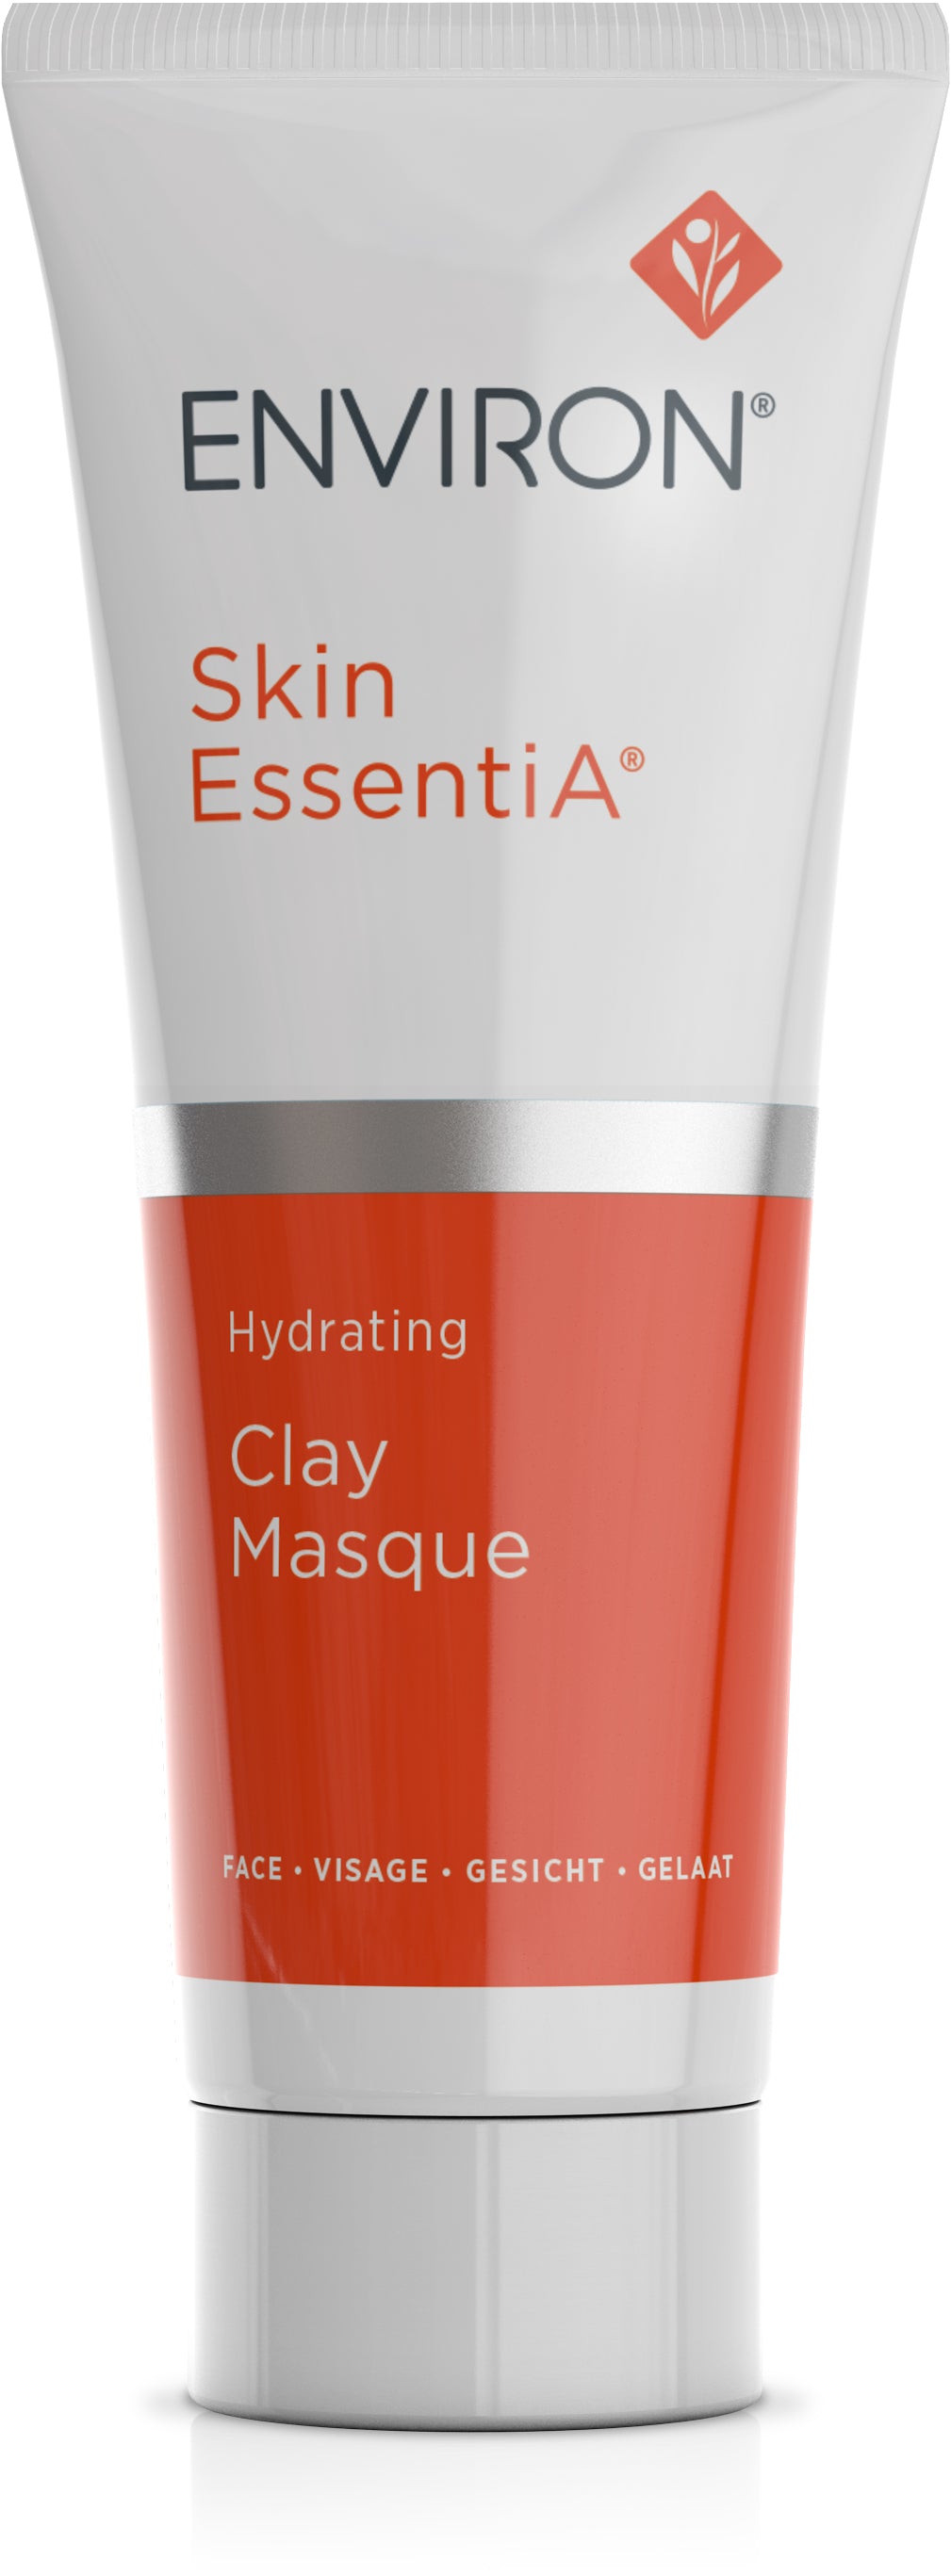 Skin EssentiA | Hydrating Clay Masque